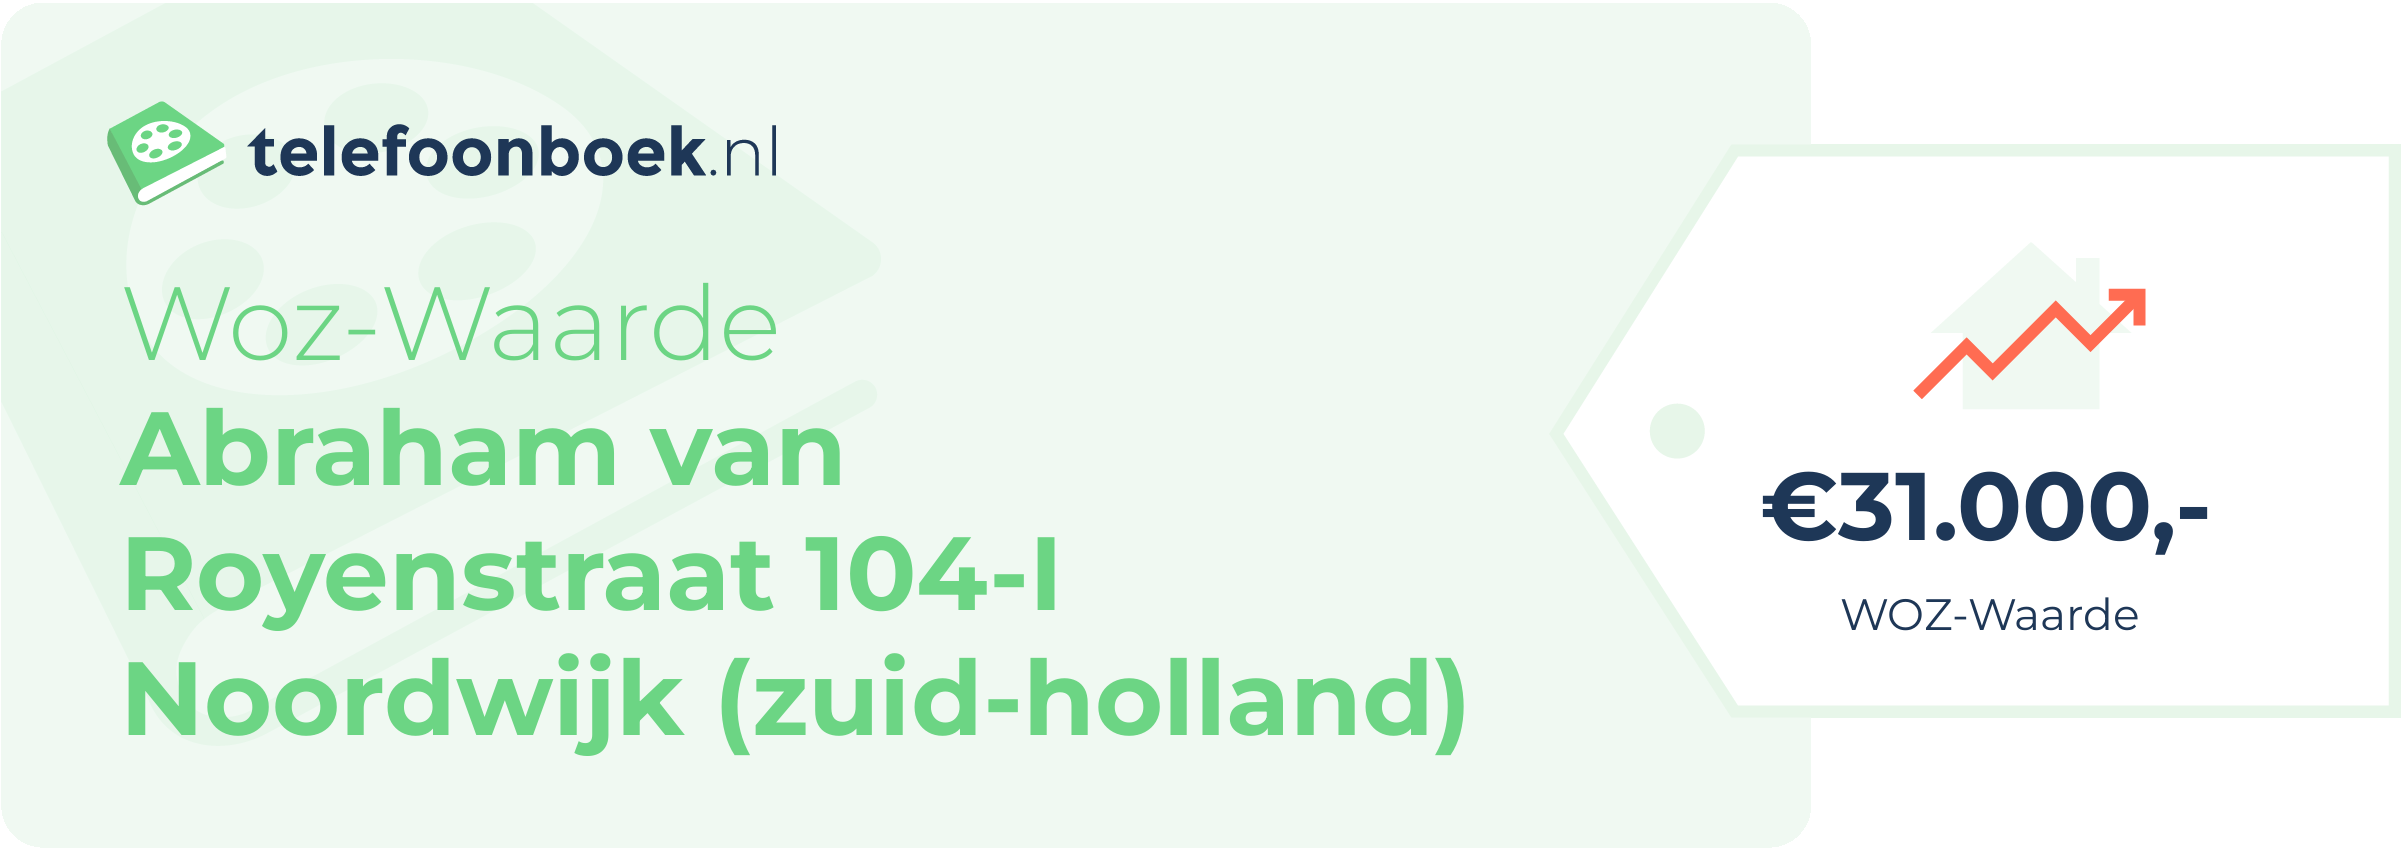 WOZ-waarde Abraham Van Royenstraat 104-I Noordwijk (Zuid-Holland)